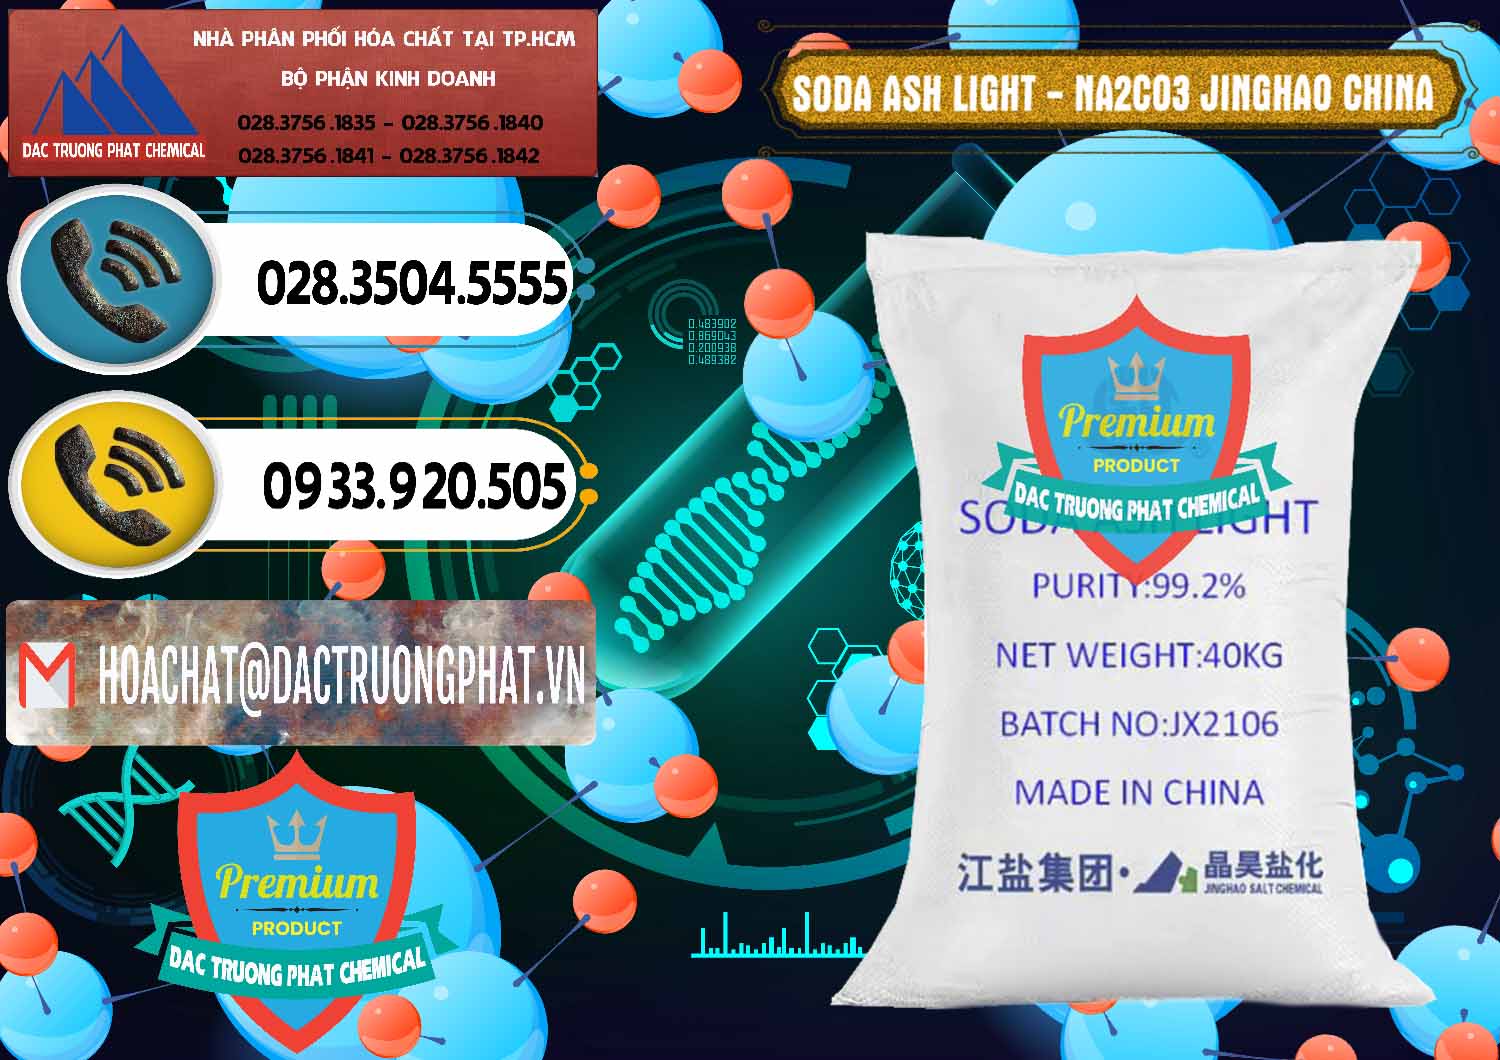 Bán _ cung ứng Soda Ash Light - NA2CO3 Jinghao Trung Quốc China - 0339 - Nơi chuyên bán _ cung cấp hóa chất tại TP.HCM - hoachatdetnhuom.vn